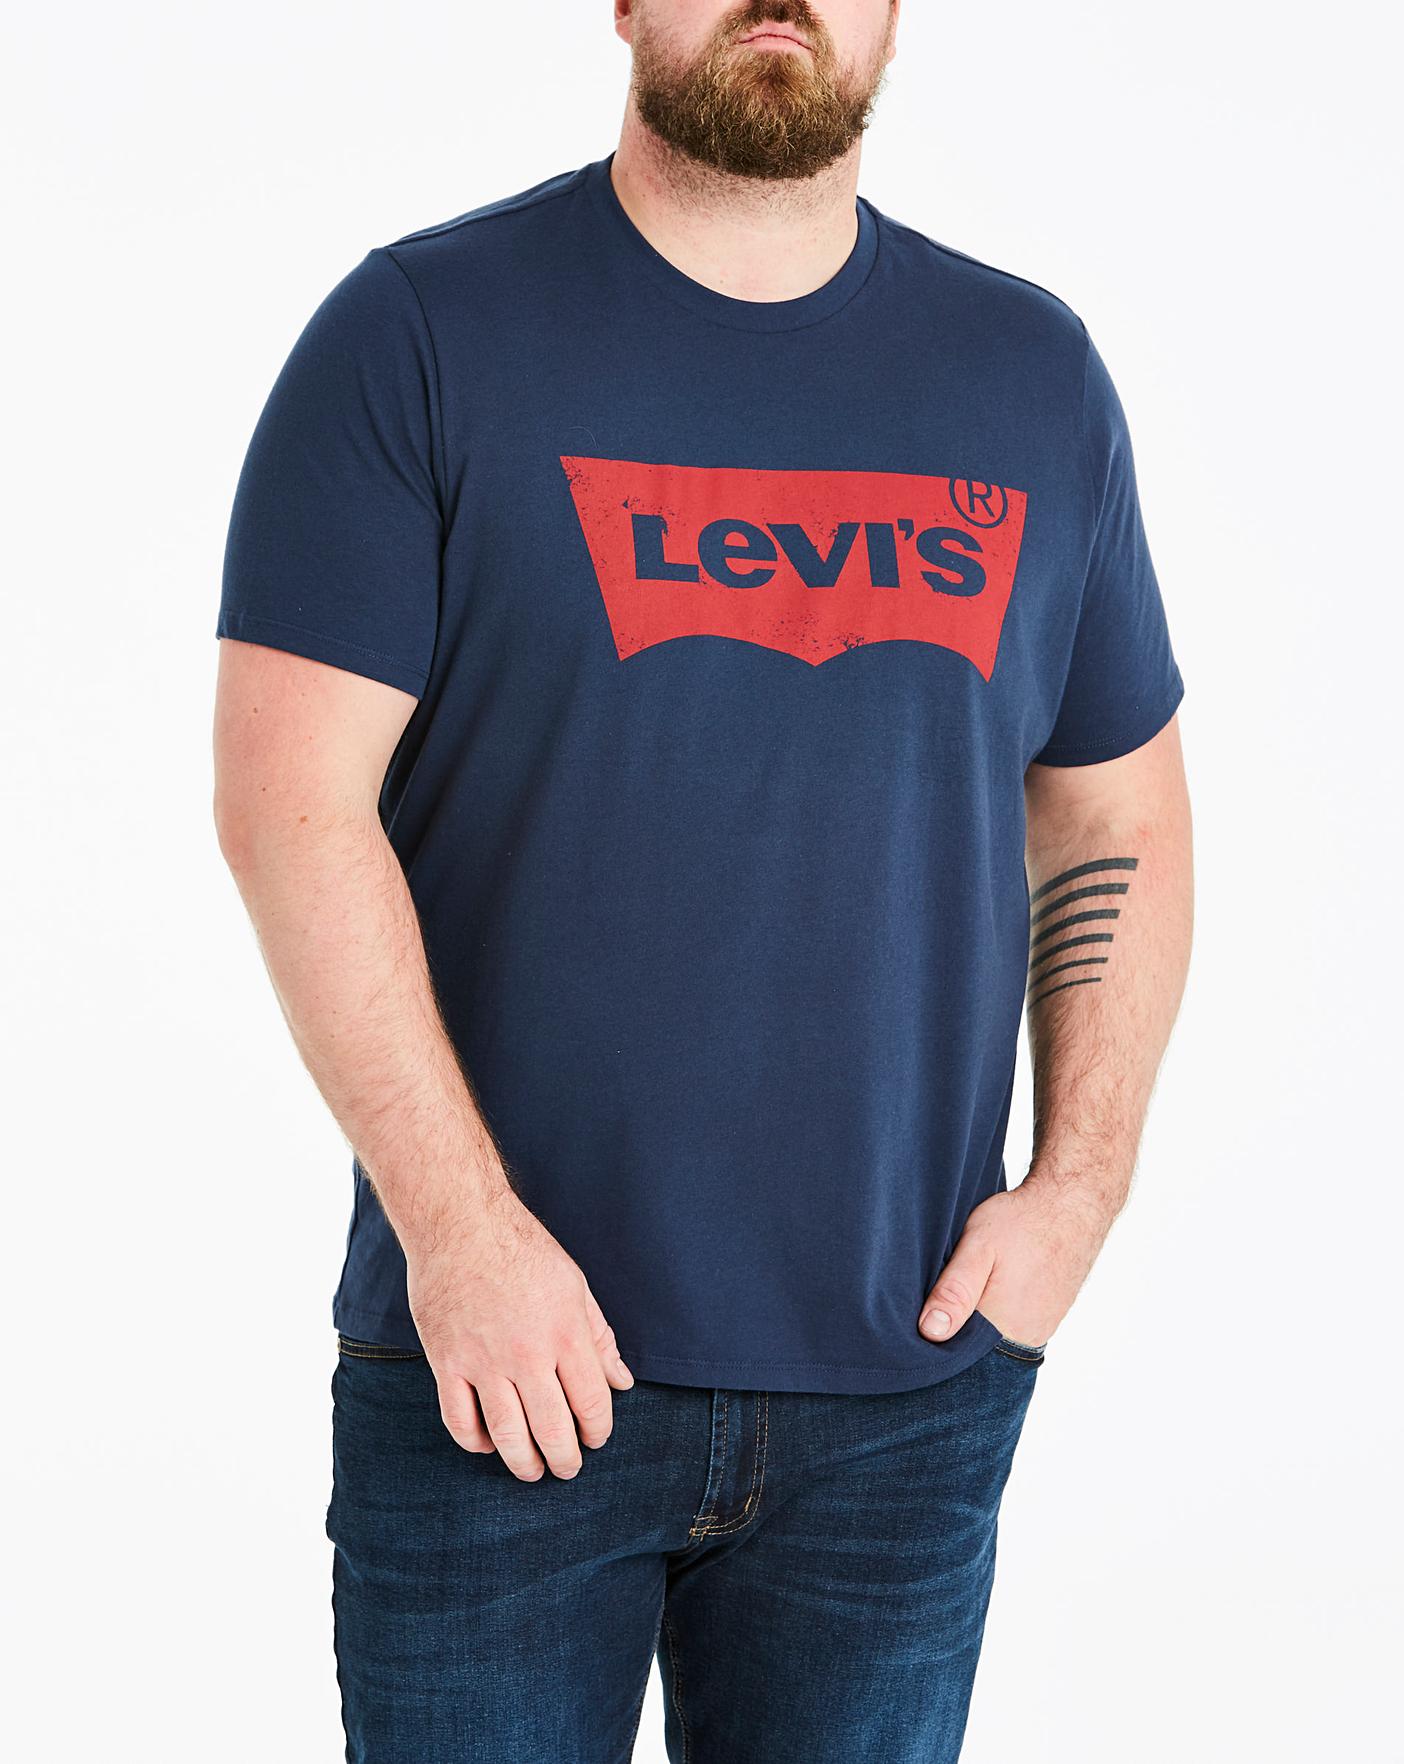 levis tshirt blue